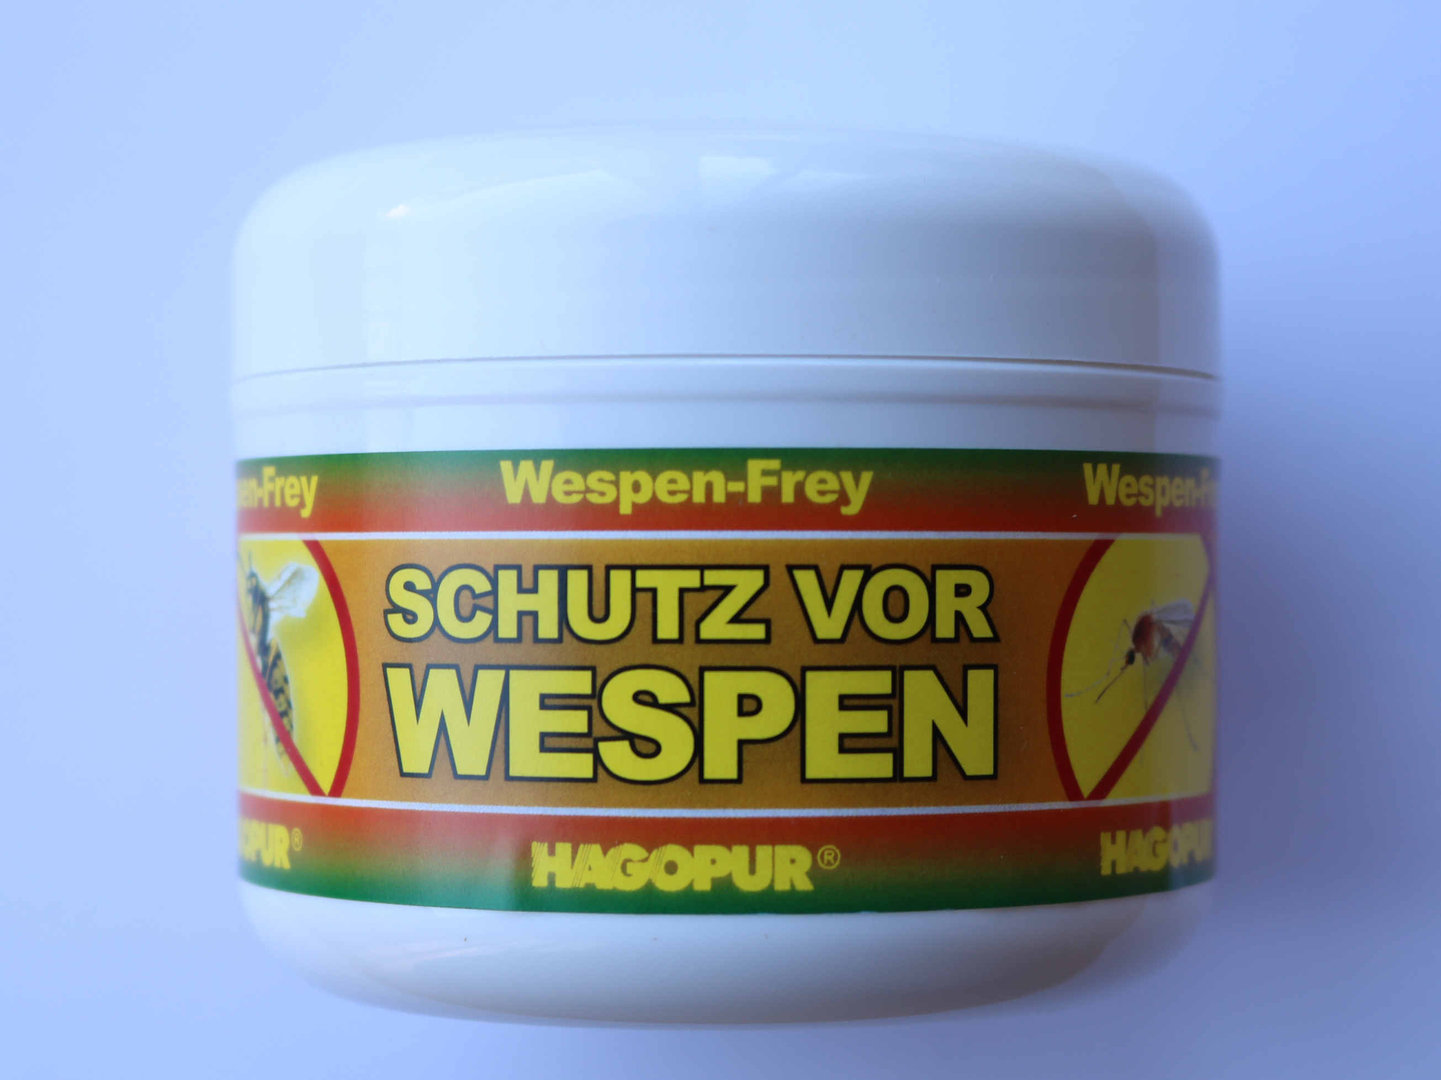 HAGOPUR Wespen-Frey, 200g